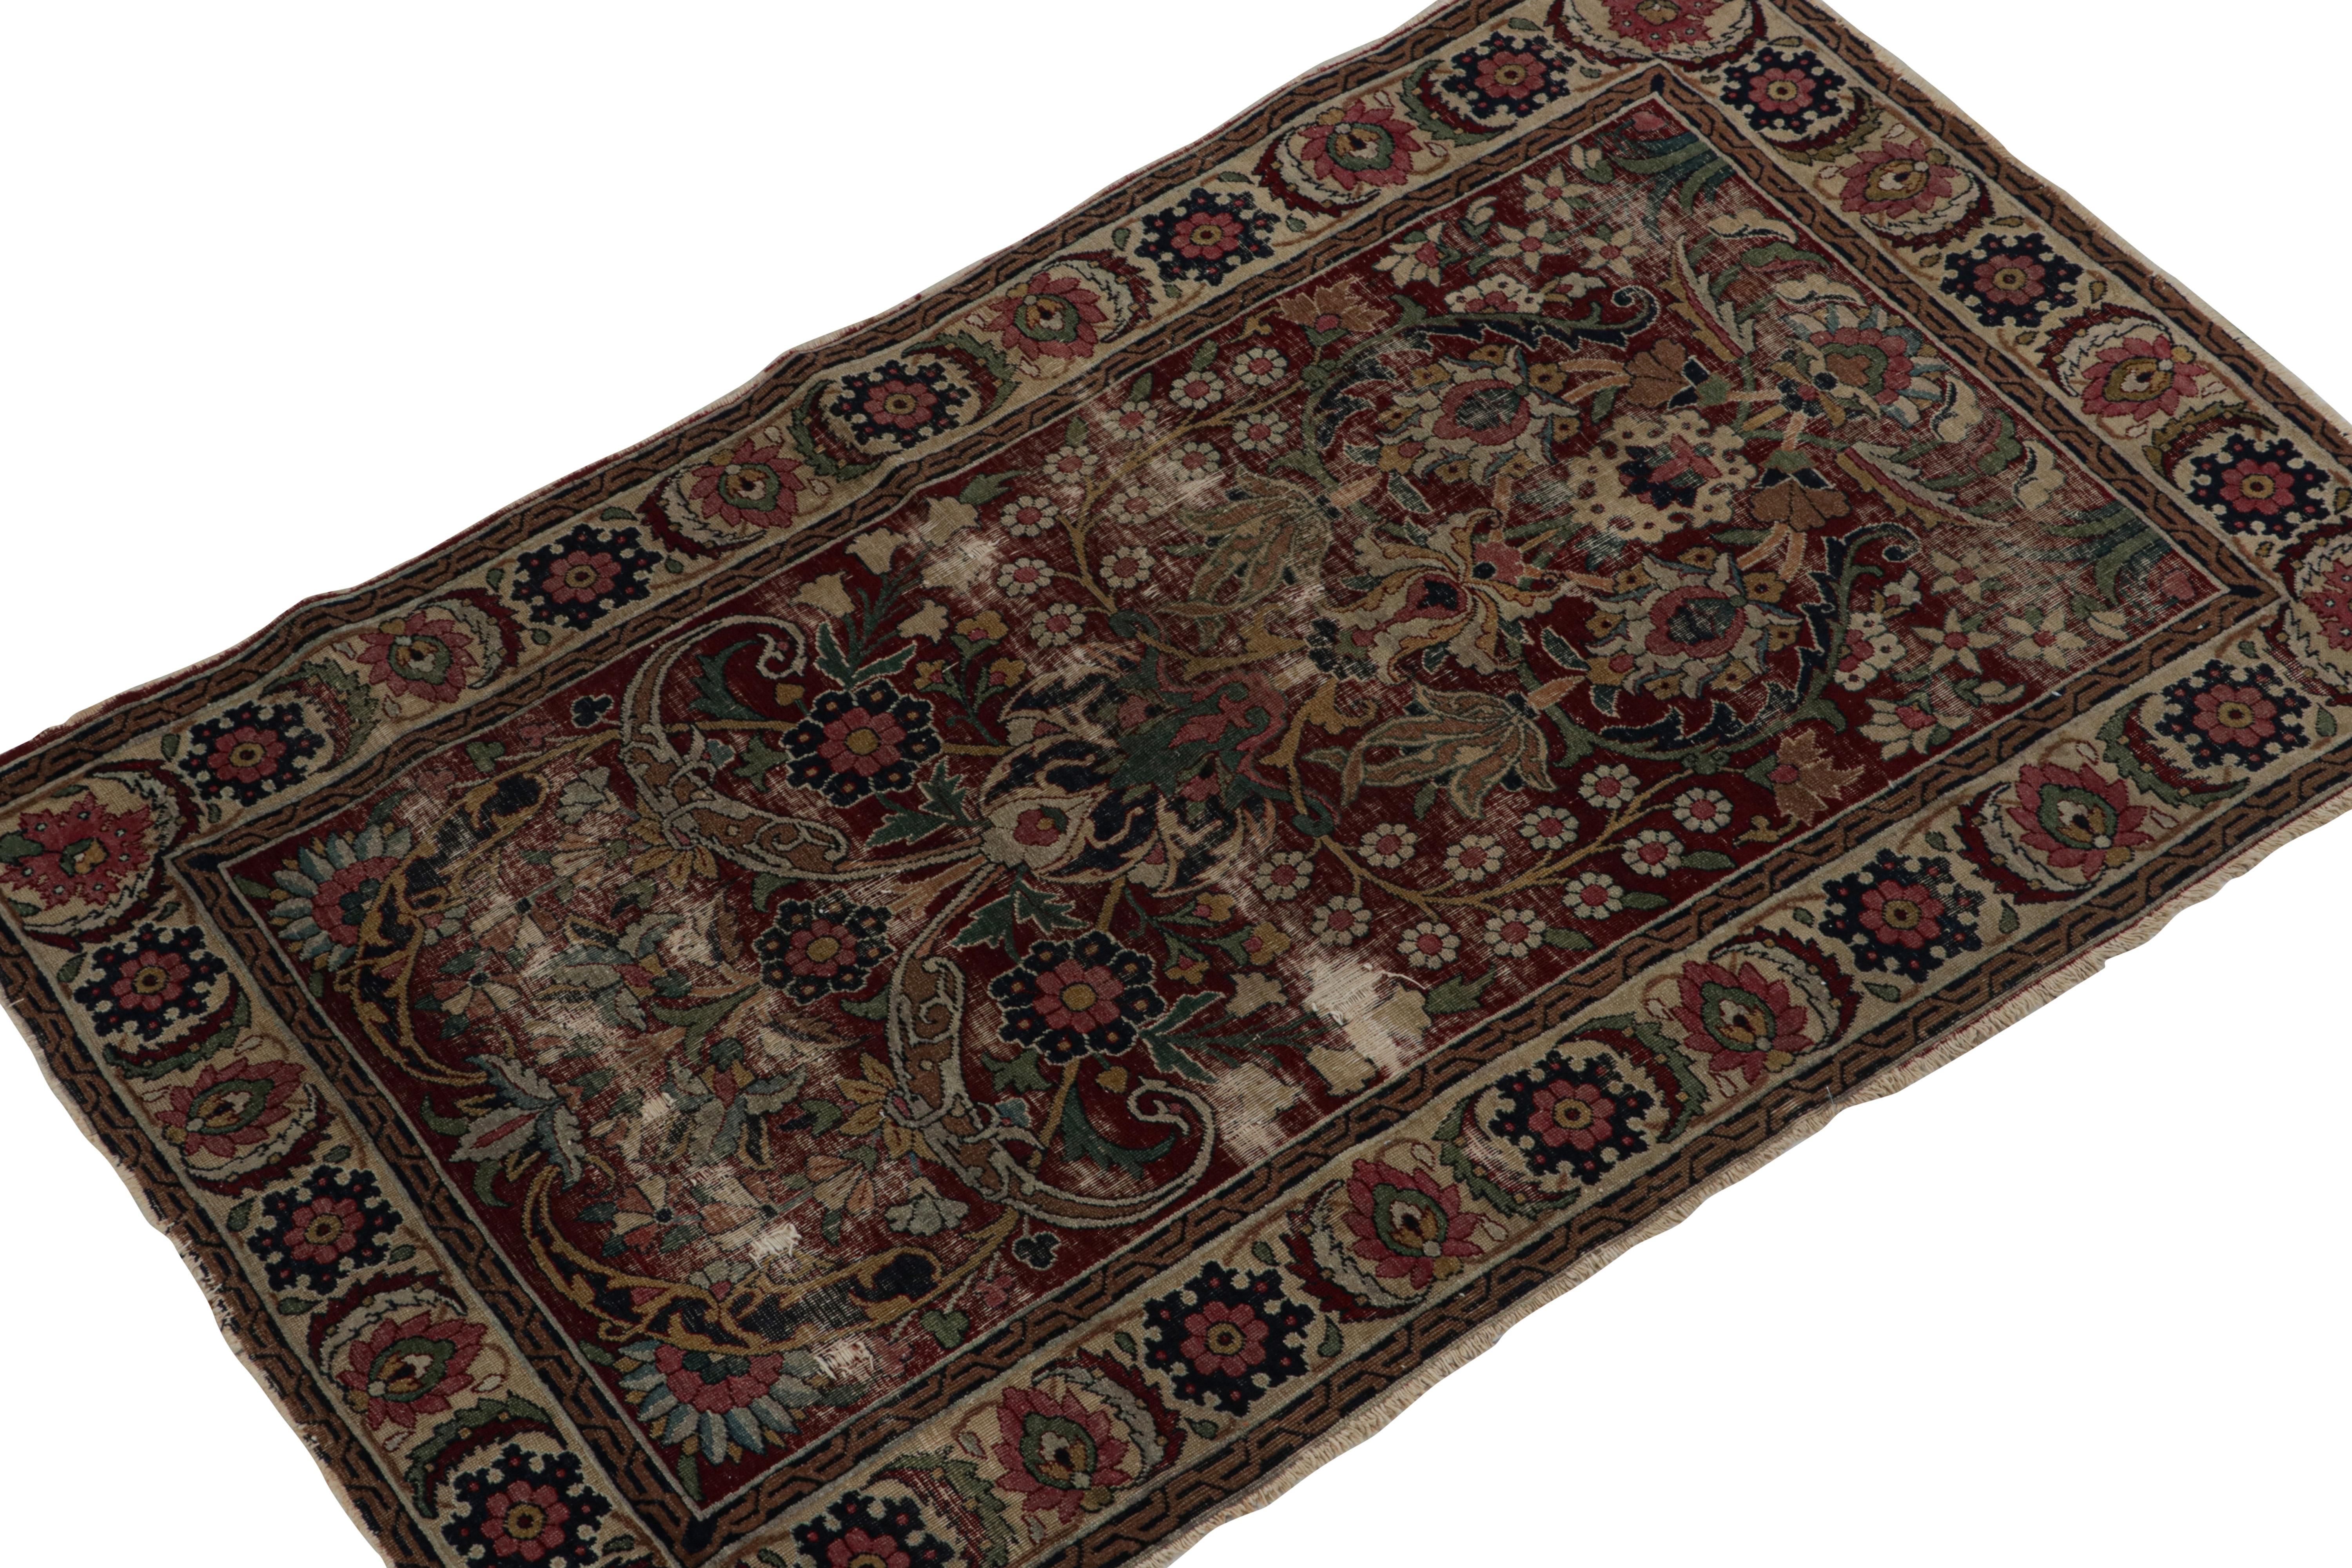 Dieser antike Khorassan-Teppich (3x4 cm), handgeknüpft aus Wolle um 1890-1900, ist ein Sammlerstück aus den persischen Kurationen von Rug & Kilim. 

Über das Design: 

Dieser Streuteppich zeichnet sich durch ein sattes burgunderfarbenes Feld und